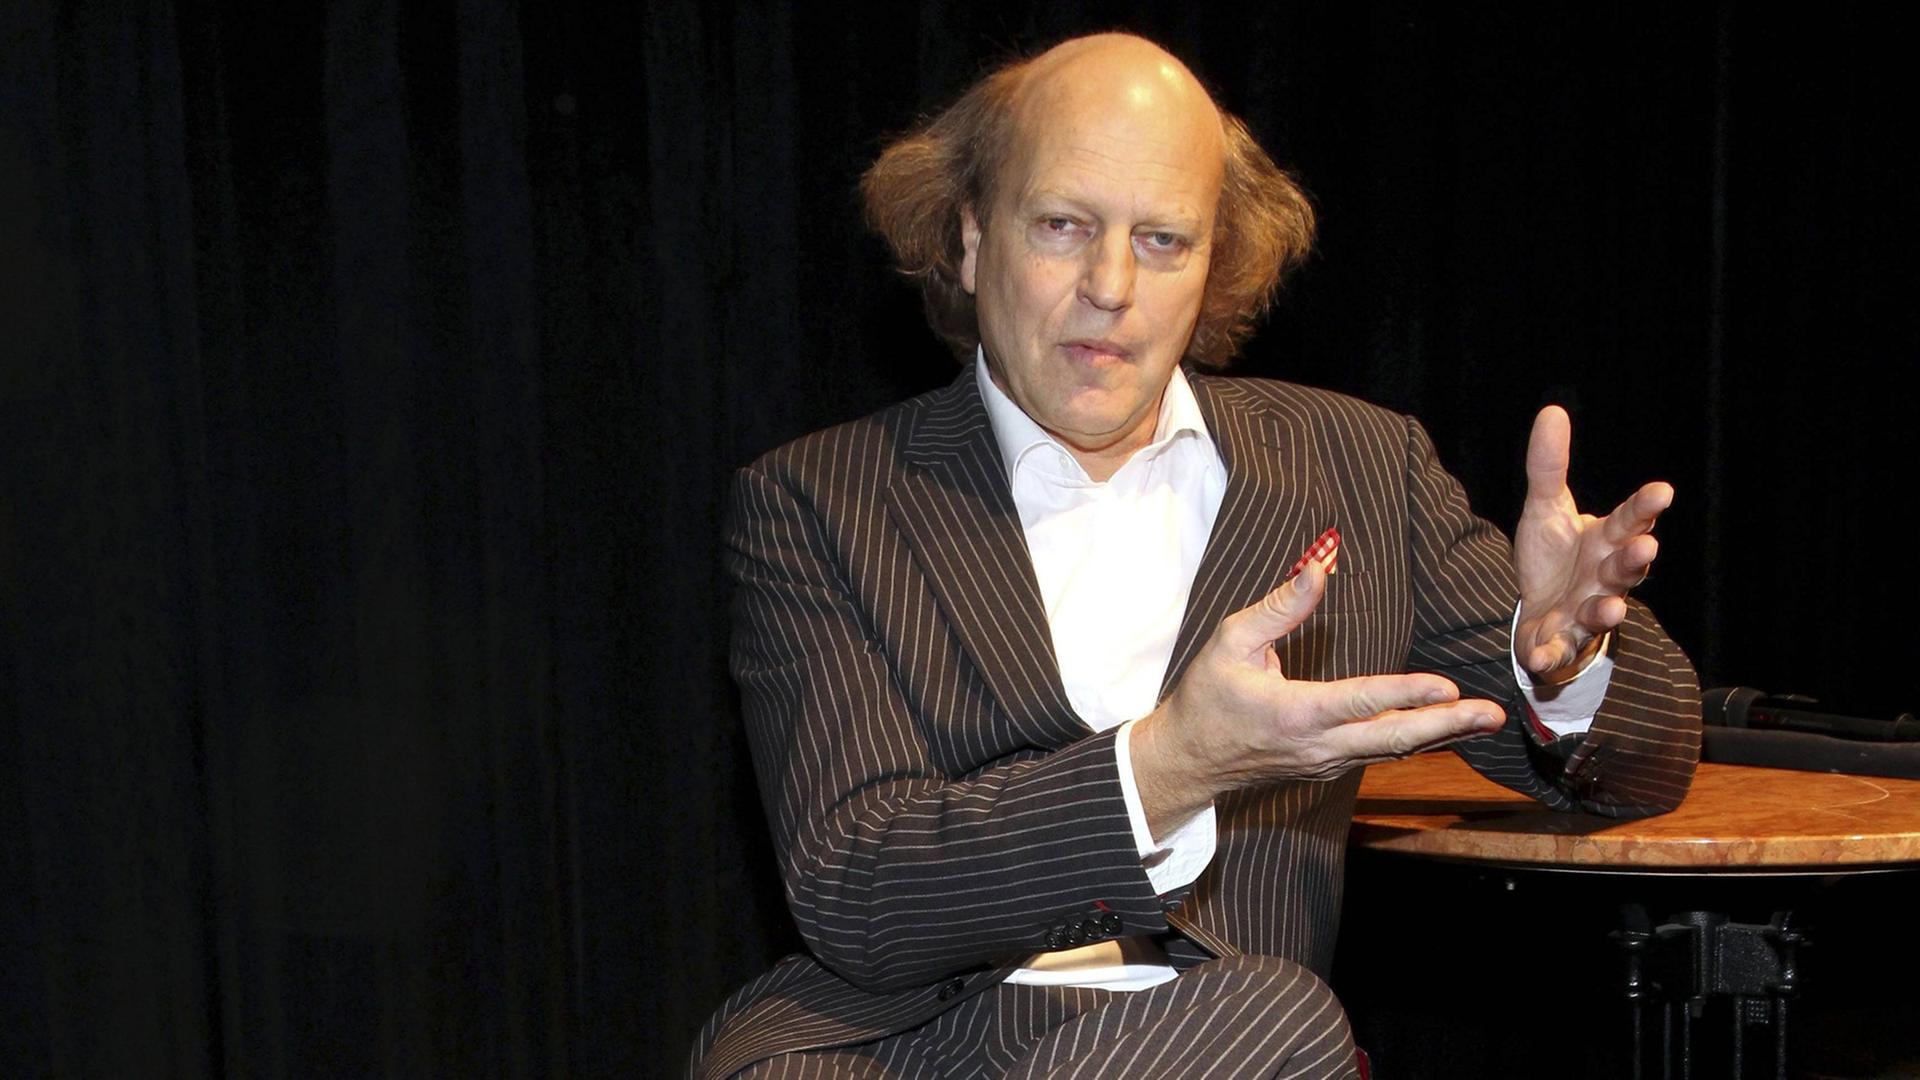 Der Kabarettist, Autor und Schauspieler Arnulf Rating auf einer Bühne sitzend.